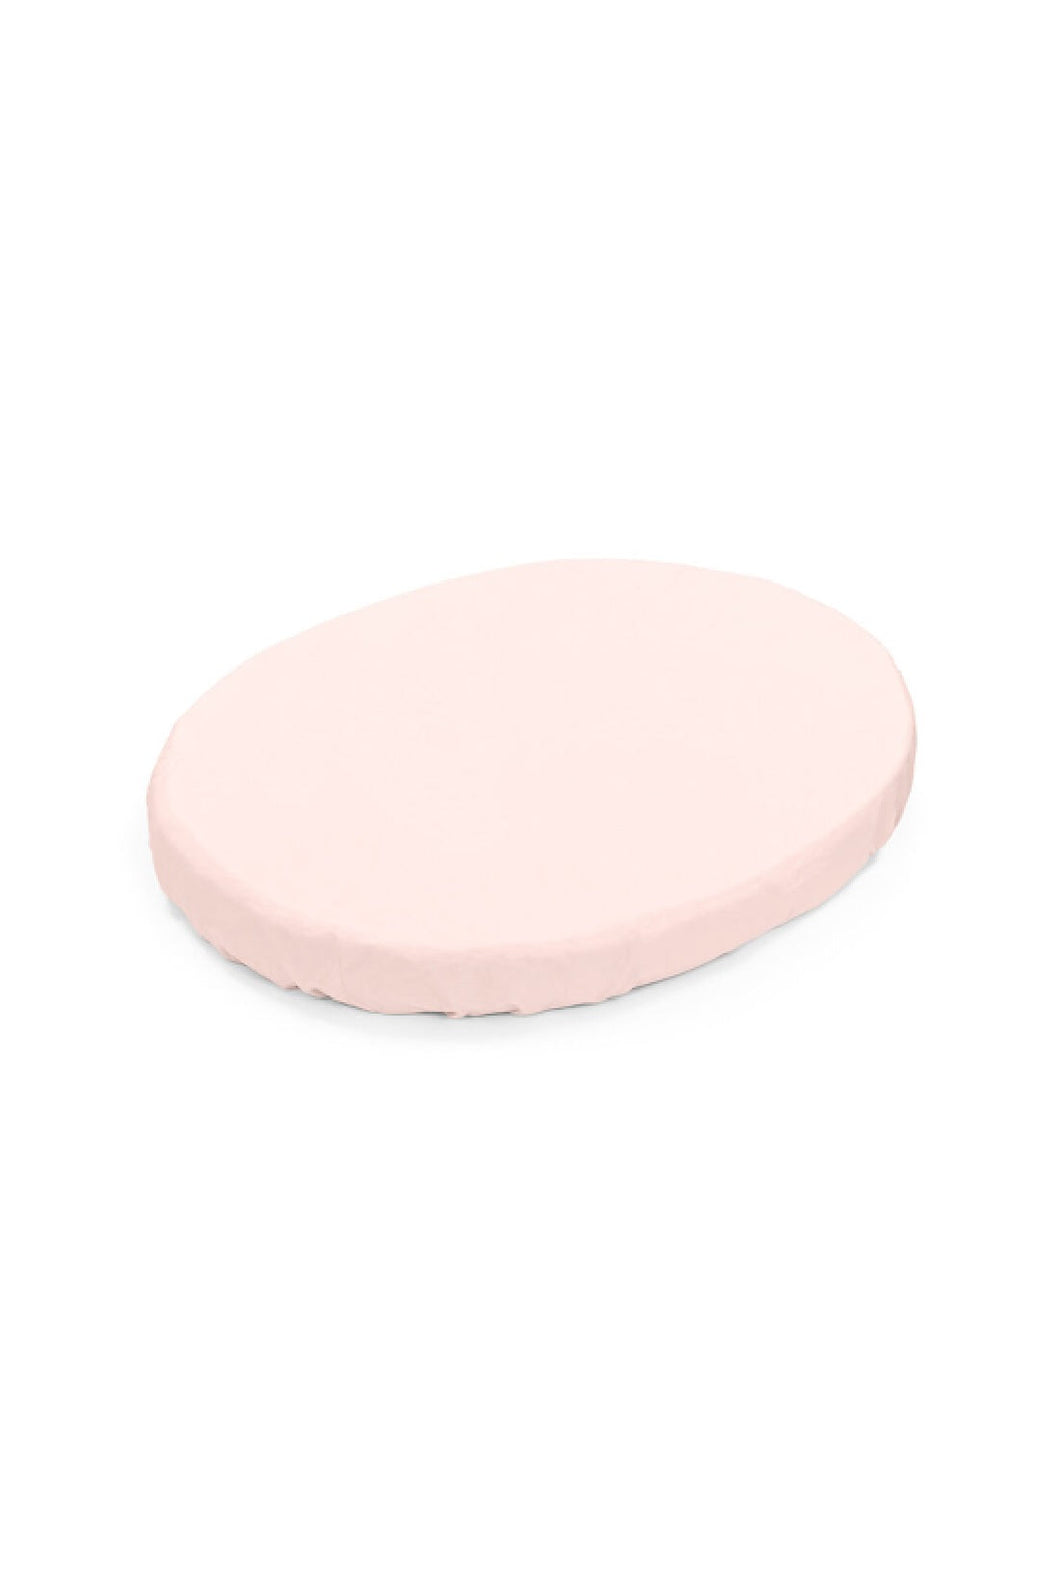 Stokke Sleepi Mini Fitted Sheet Peachy Pink 1